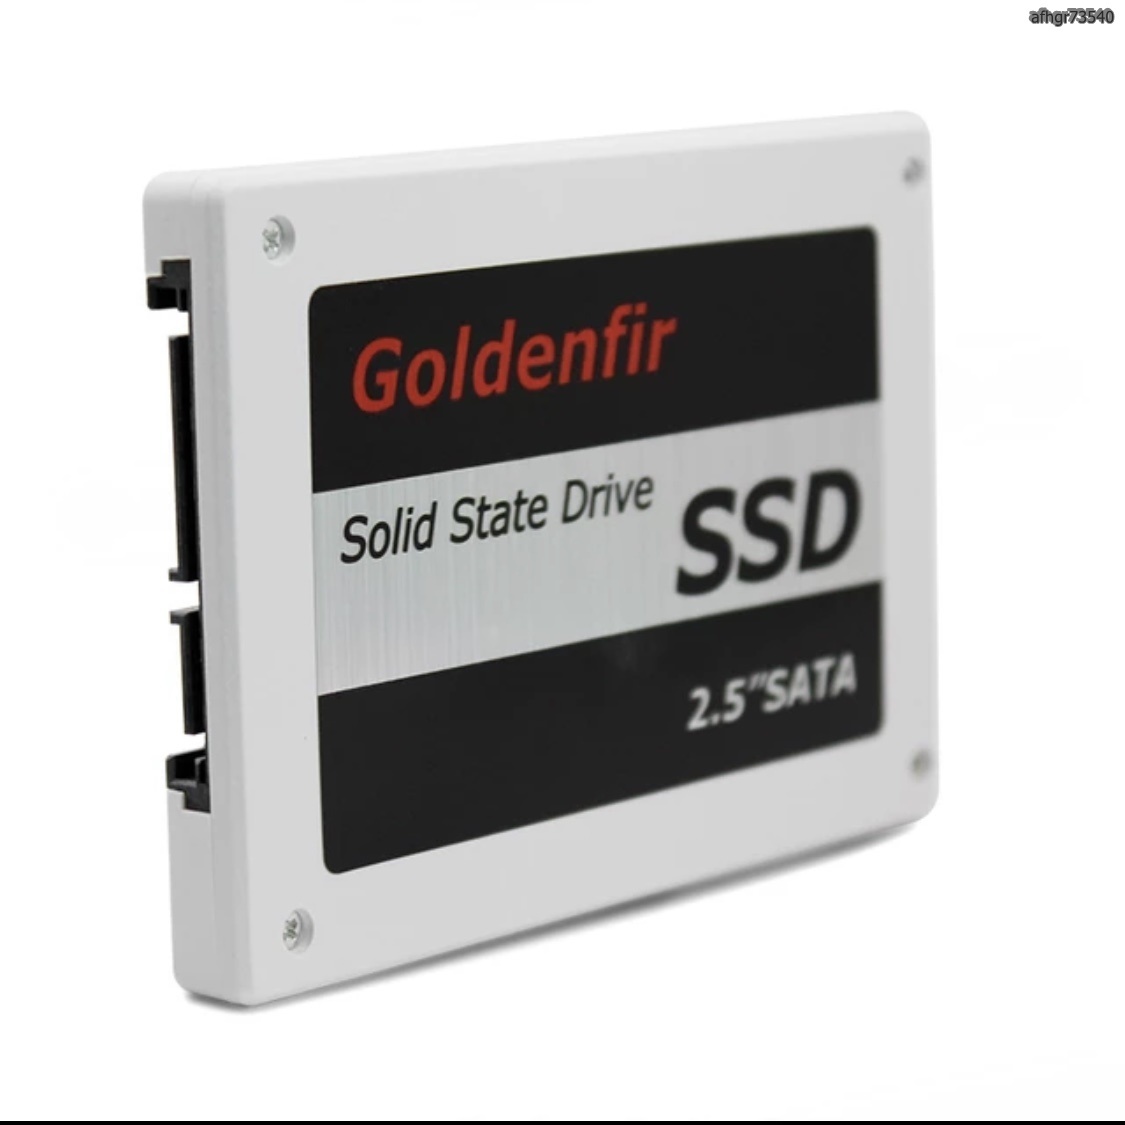 【送料無料】SSD Goldenfir 360GB SATA3 / 6.0Gbps 新品 2.5インチ 高速 NAND TLC 内蔵 デスクトップPC ノートパソコン (a1241)_画像5